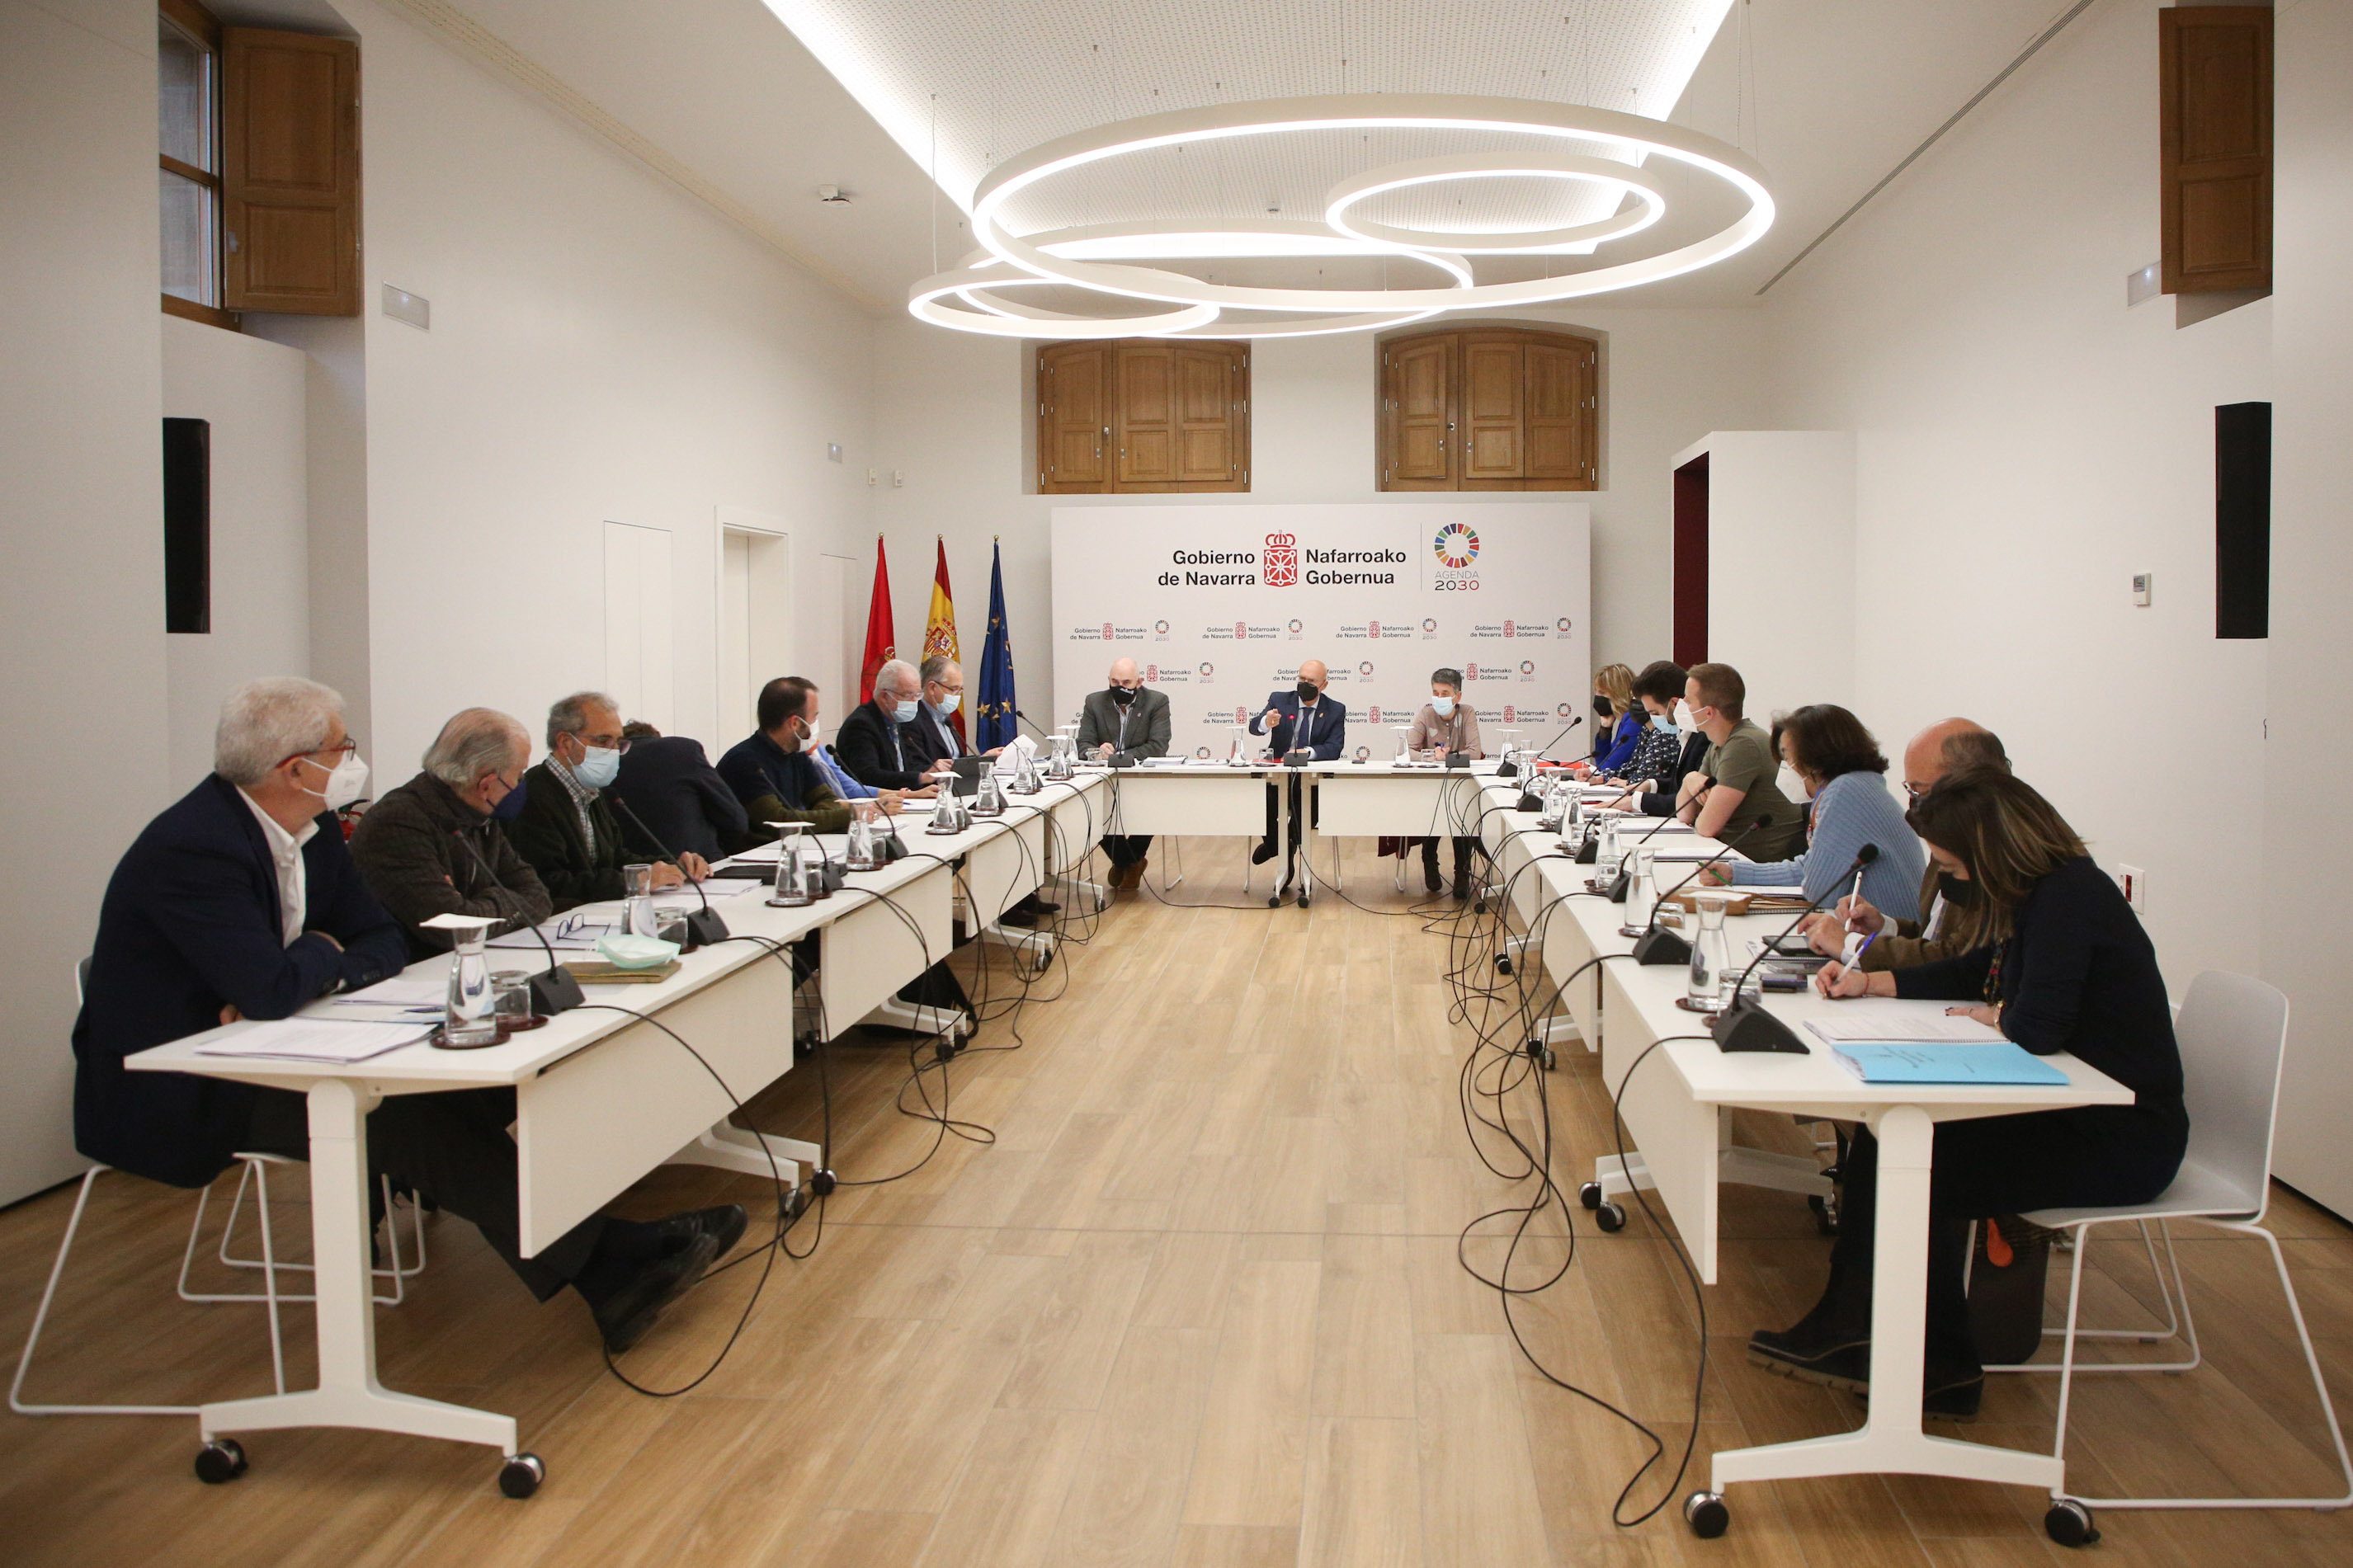 Reunión del Consorcio de Alta Velocidad de la Comarca de Pamplona, este 
jueves, en el Palacio de Navarra.